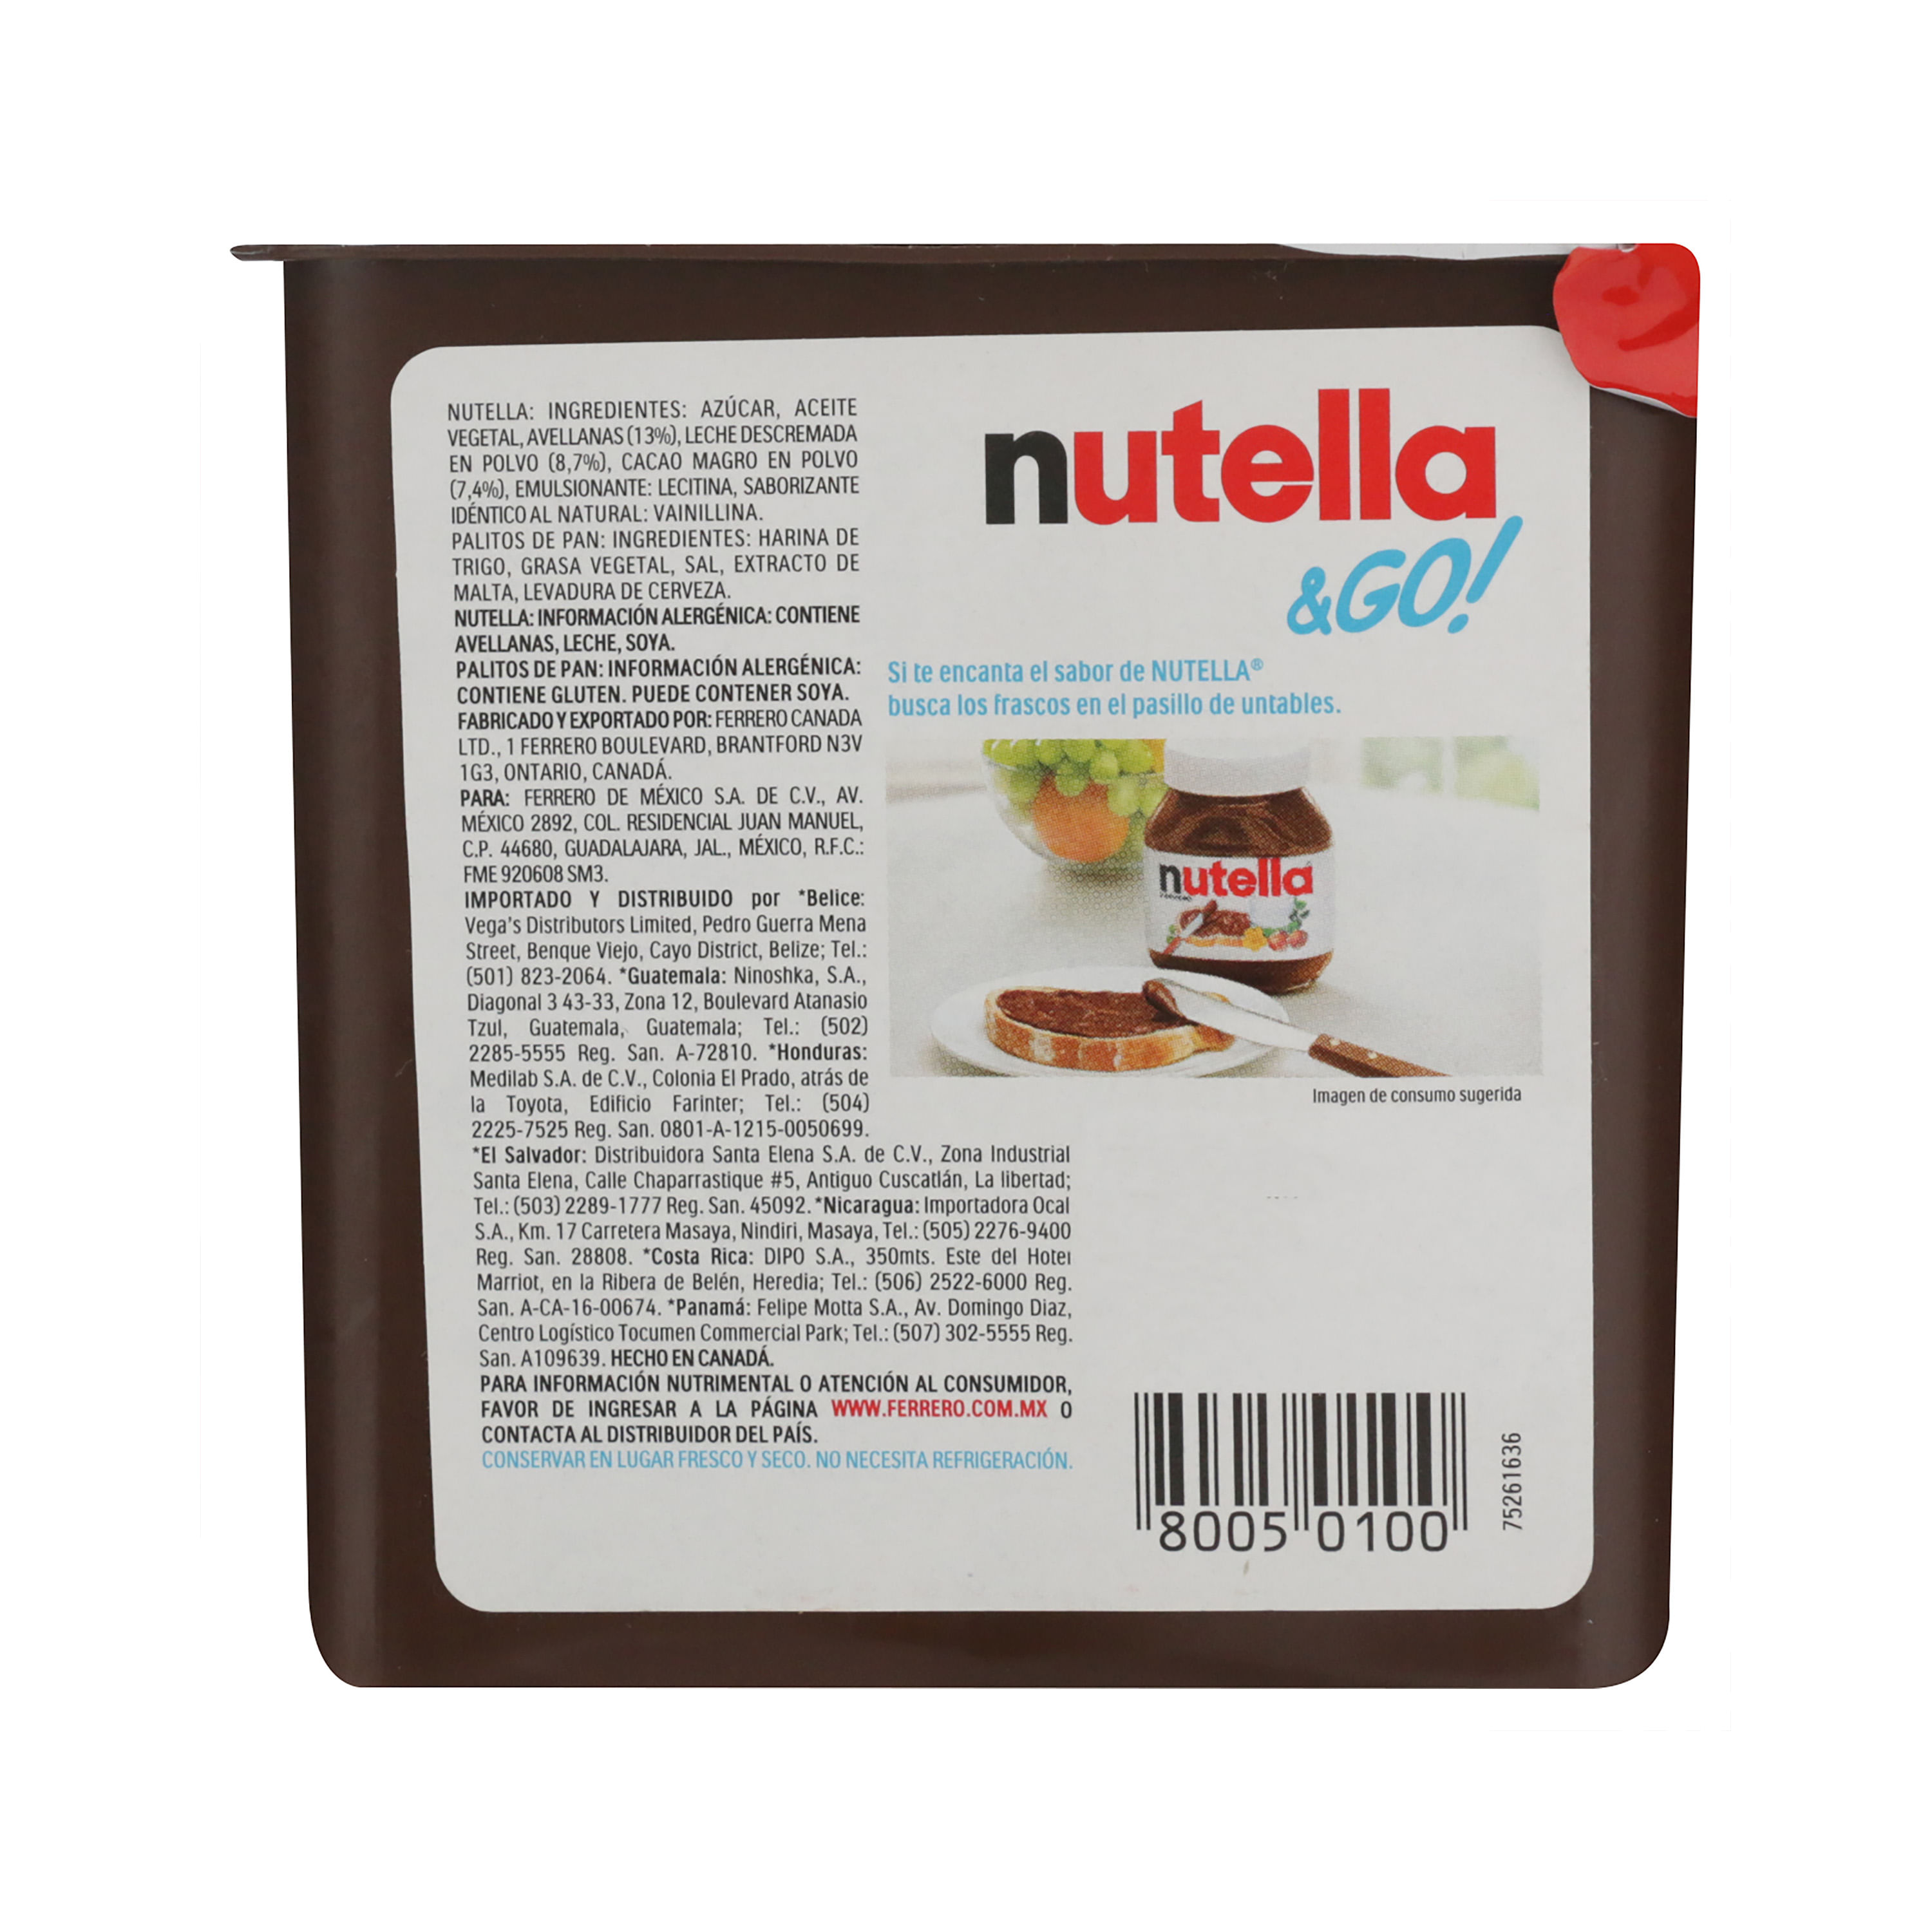 Las mejores ofertas en Nutella